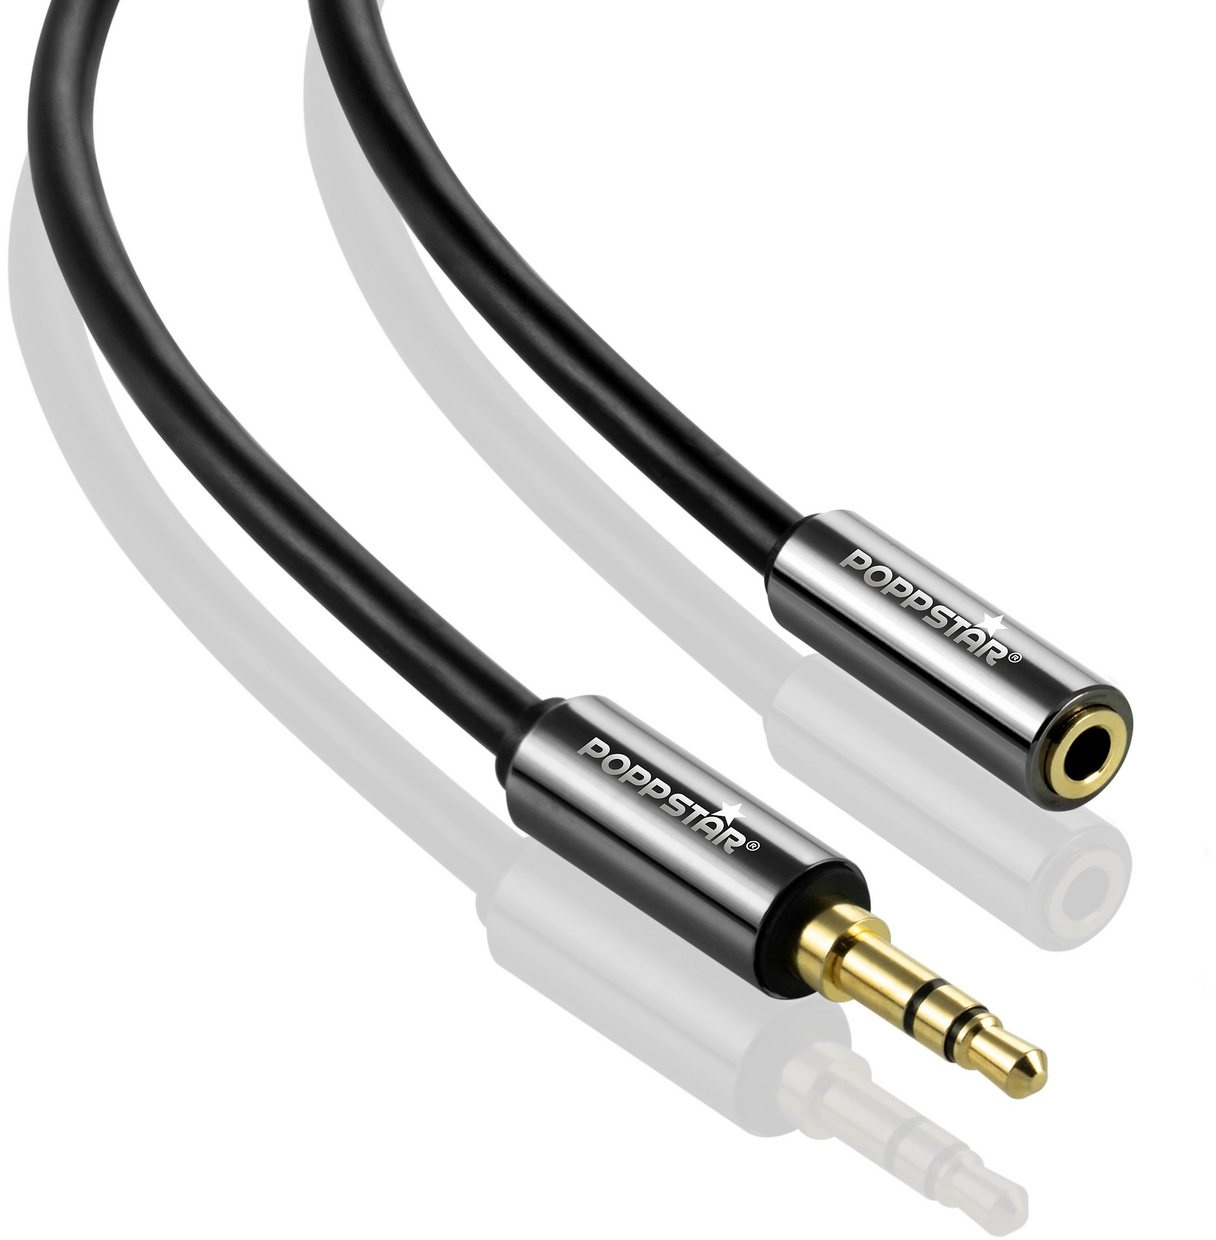 Poppstar Audio Kabel Klinke 3,5mm Klinkenkabel Stecker auf Buchse Audio-Kabel, 3,5-mm-Klinke, 3,5-mm-Klinke (300 cm), Verlängerungskabel für Kopfhörer Smartphone MP3-Player Kfz Autoradio